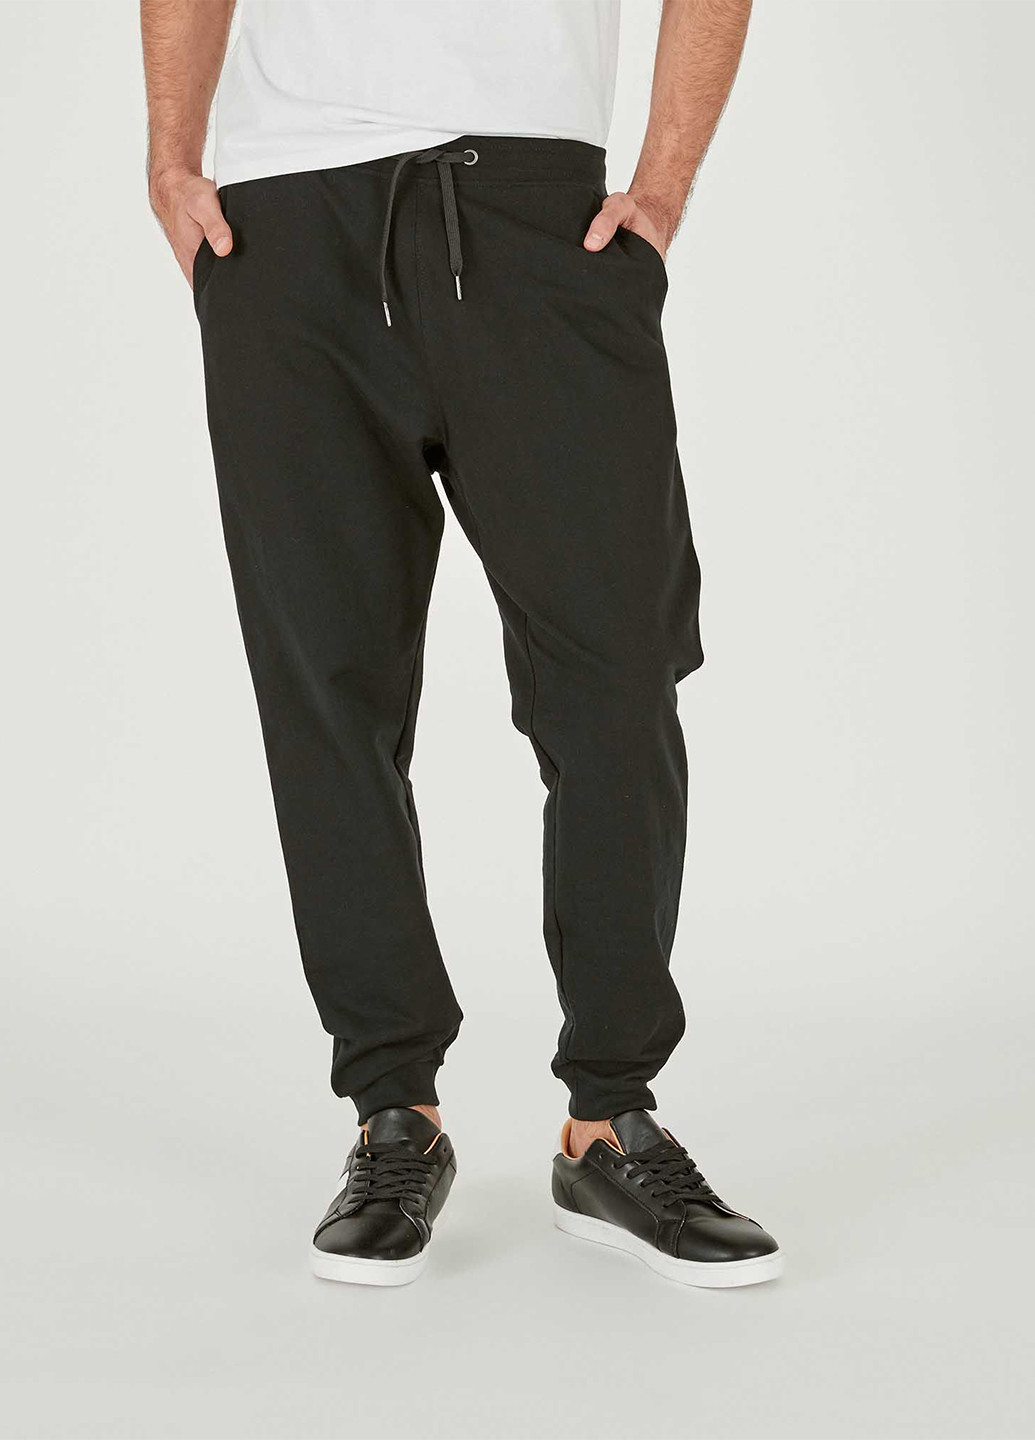 Черные кэжуал демисезонные со средней талией брюки Piazza Italia